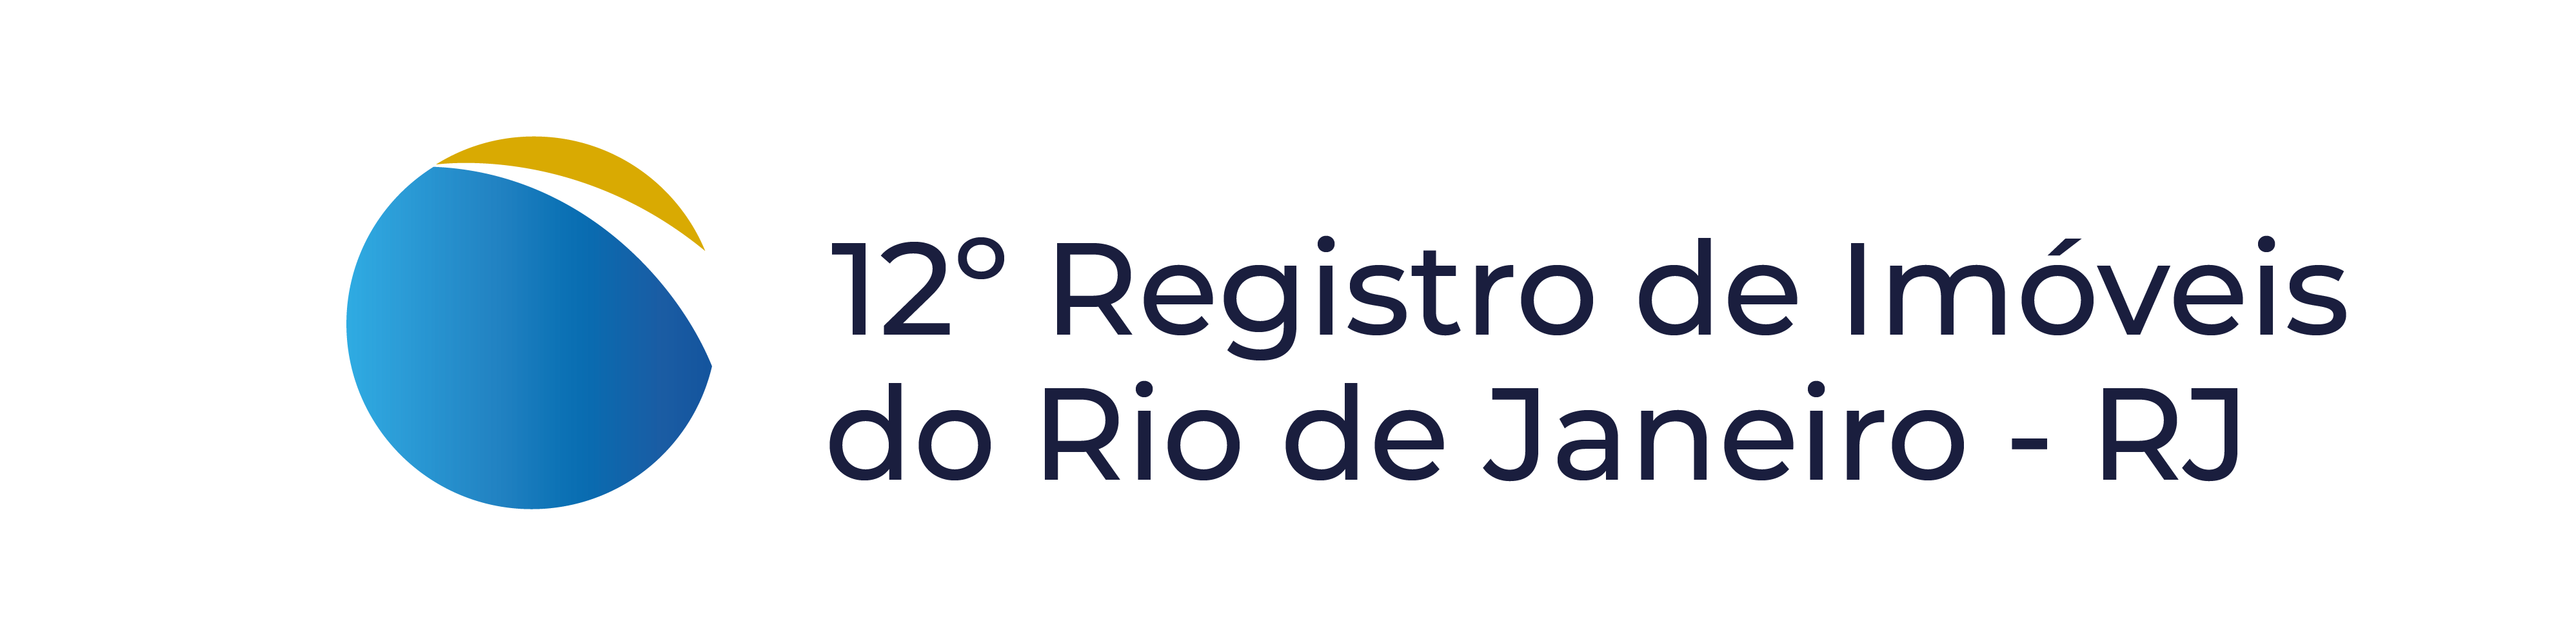 12º Registro de Imóveis do Rio de Janeiro